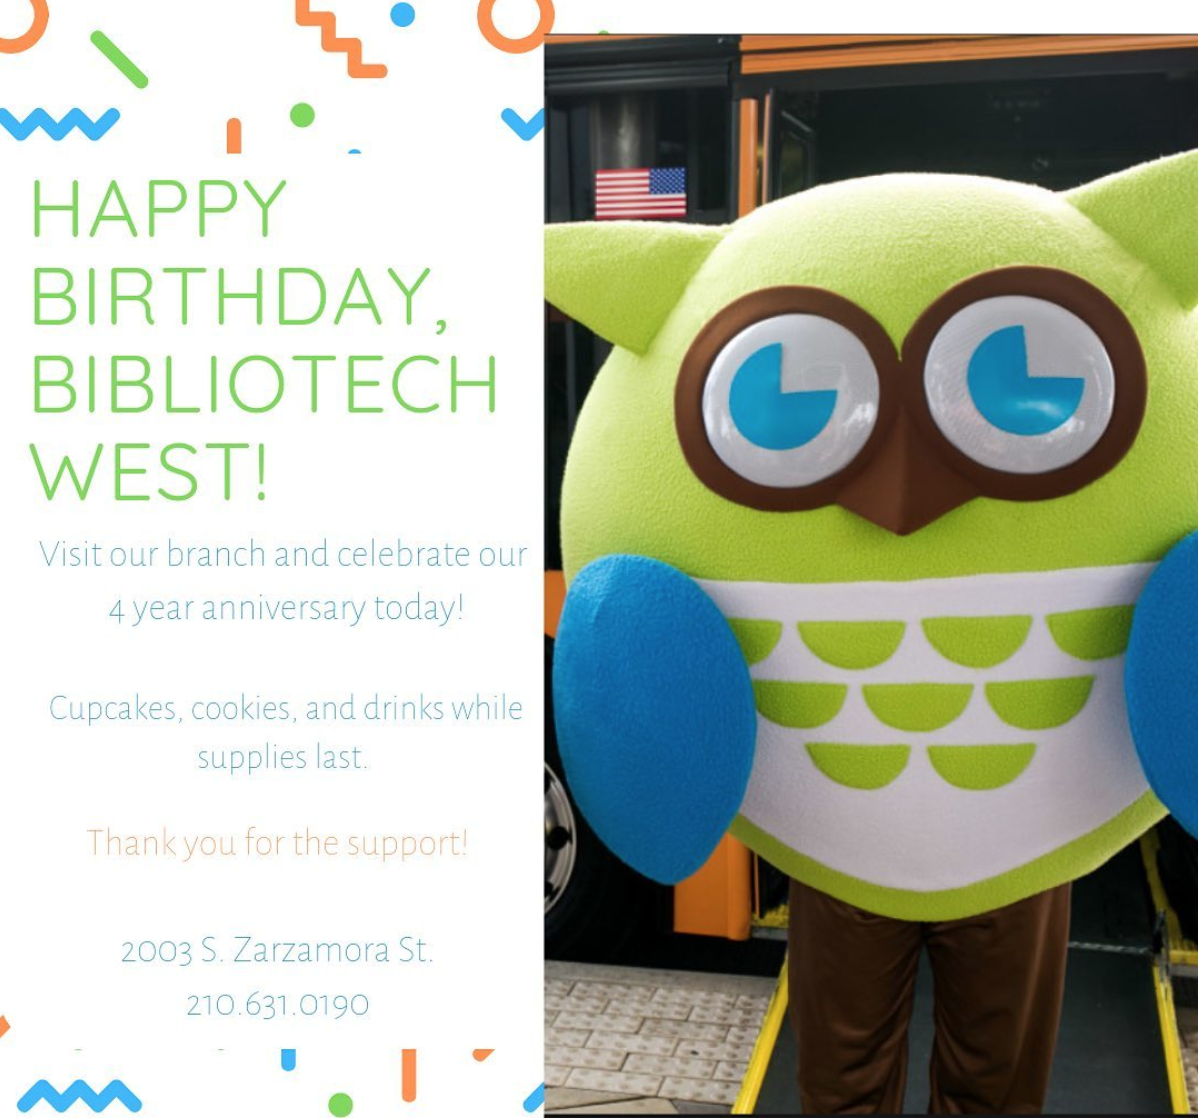 Happy Birthday BiblioTech West!